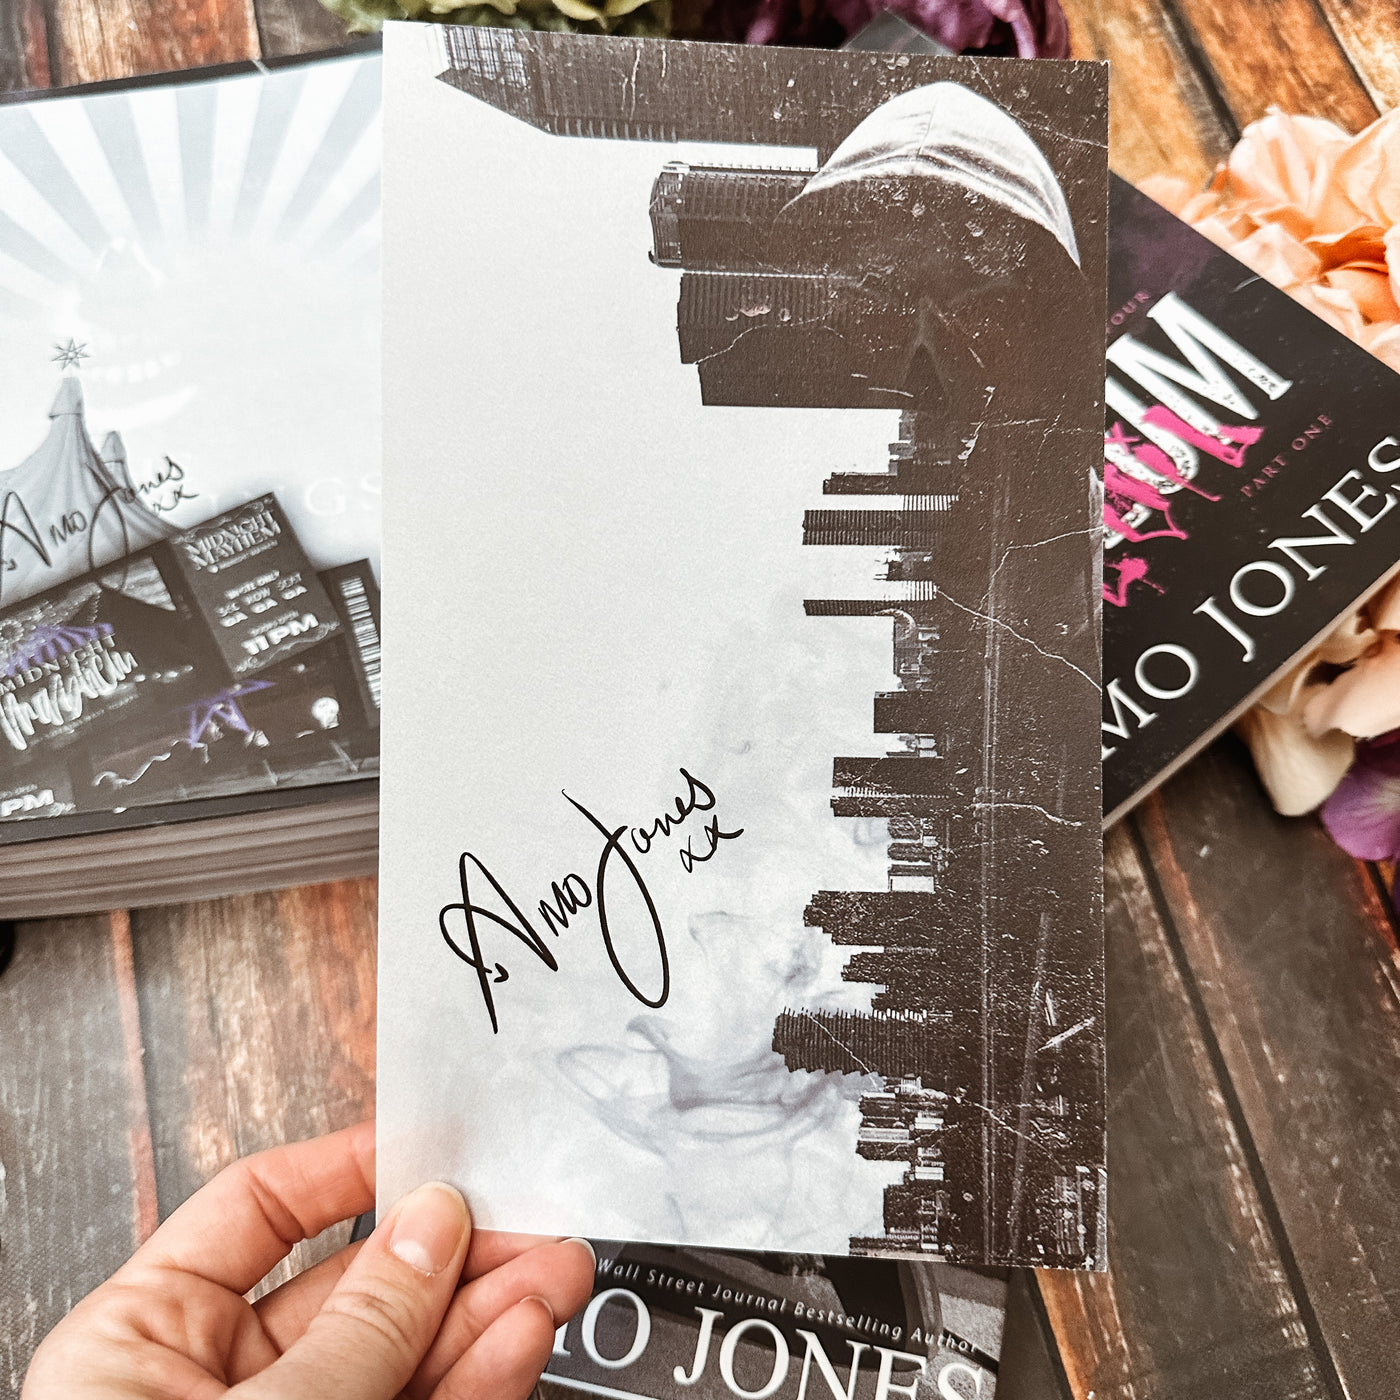 Amo Jones- The Elite Kings Novel Note-Digitally Signed Overlay Print